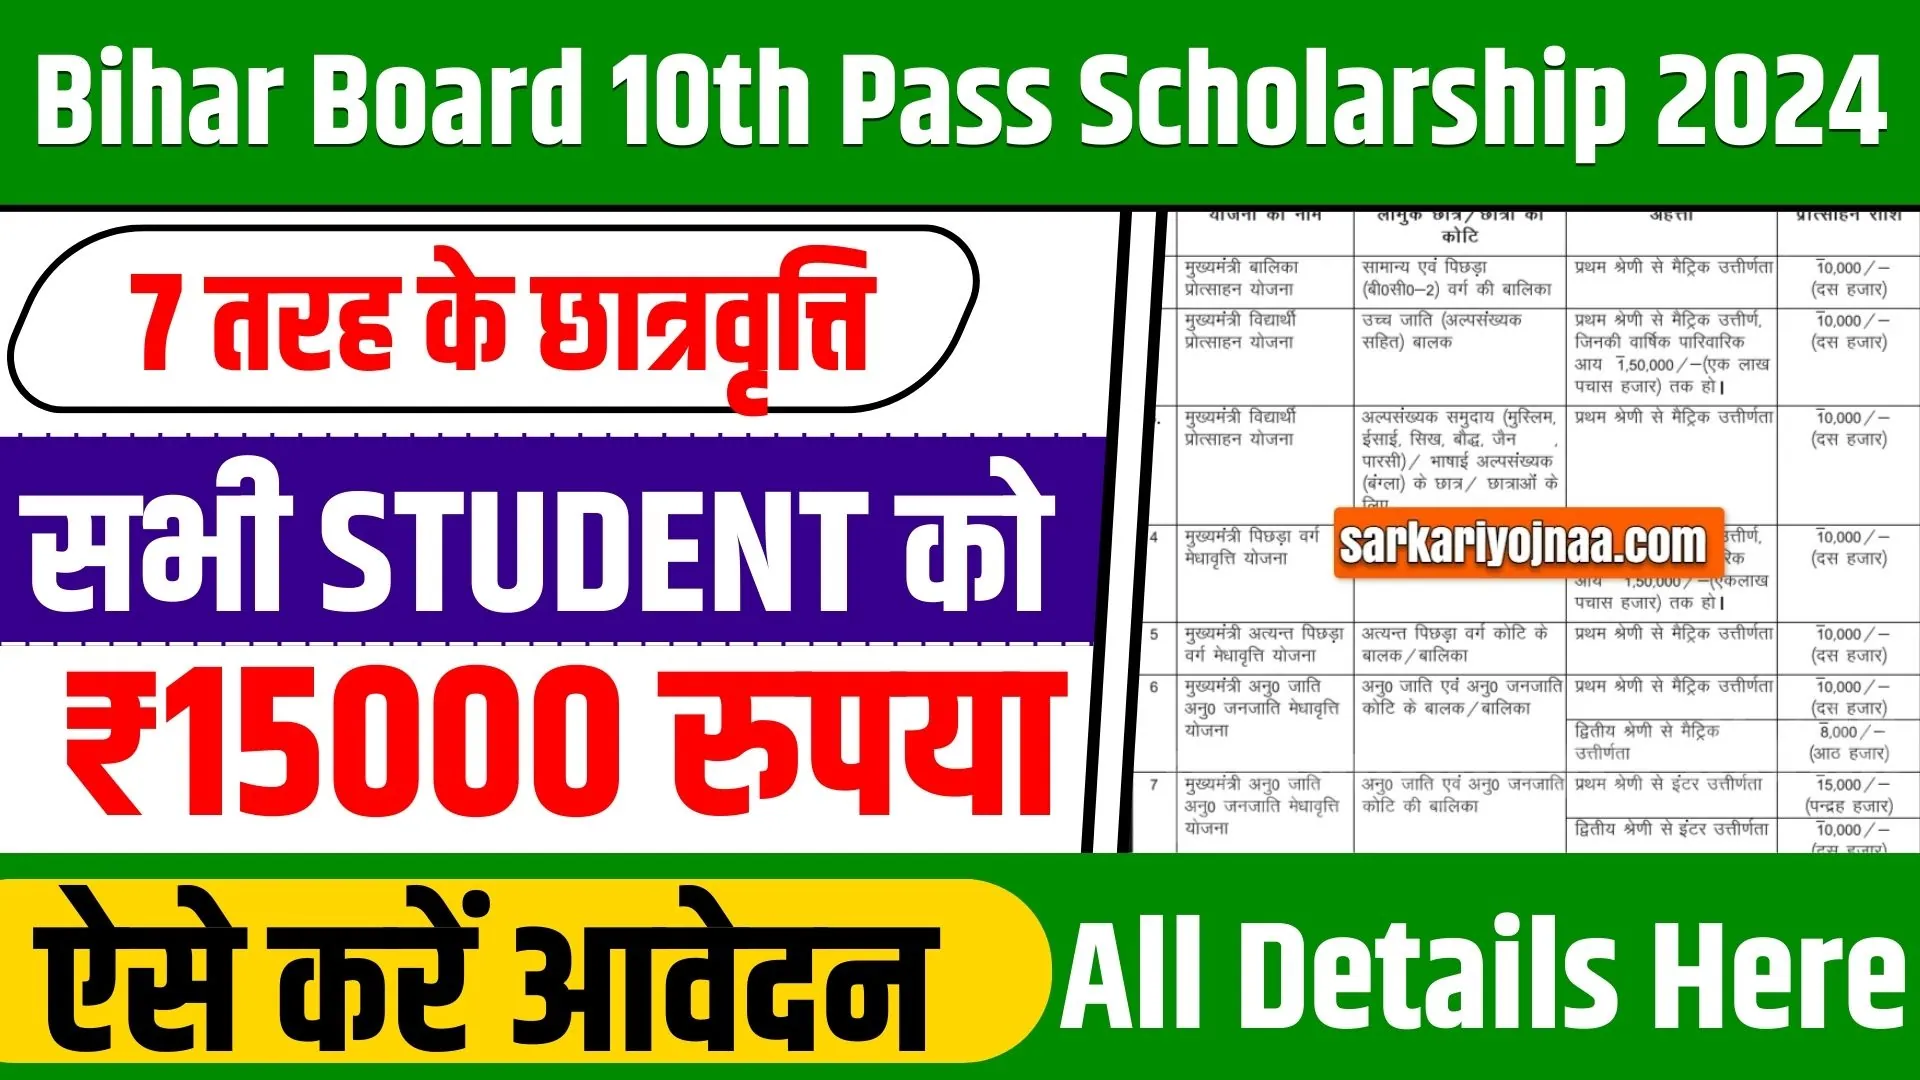 Bihar Board 10th Pass Scholarship 2024: पास होने के बाद बिहार सरकार आपको देती है इन 7 प्रकार की स्कालर्शिप योजना का लाभ